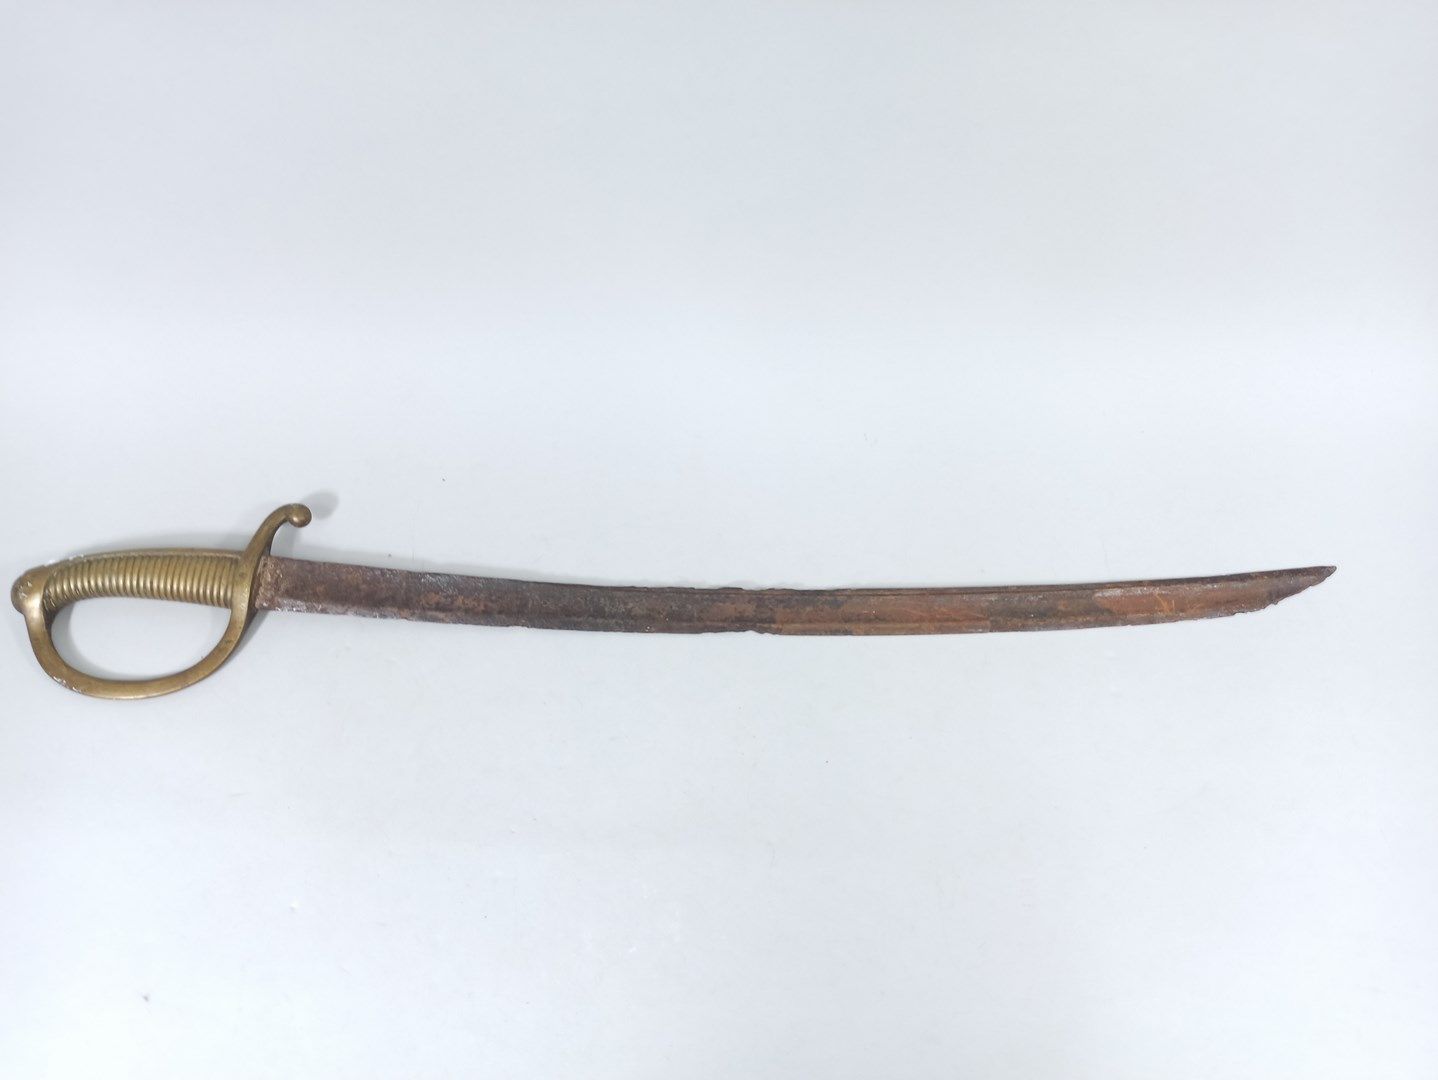 Null 一套3件的武器。

1）打火机（已毁坏

2）布吕歇尔军刀（状况非常糟糕

3）1837型海军陆战队军刀。证券公司